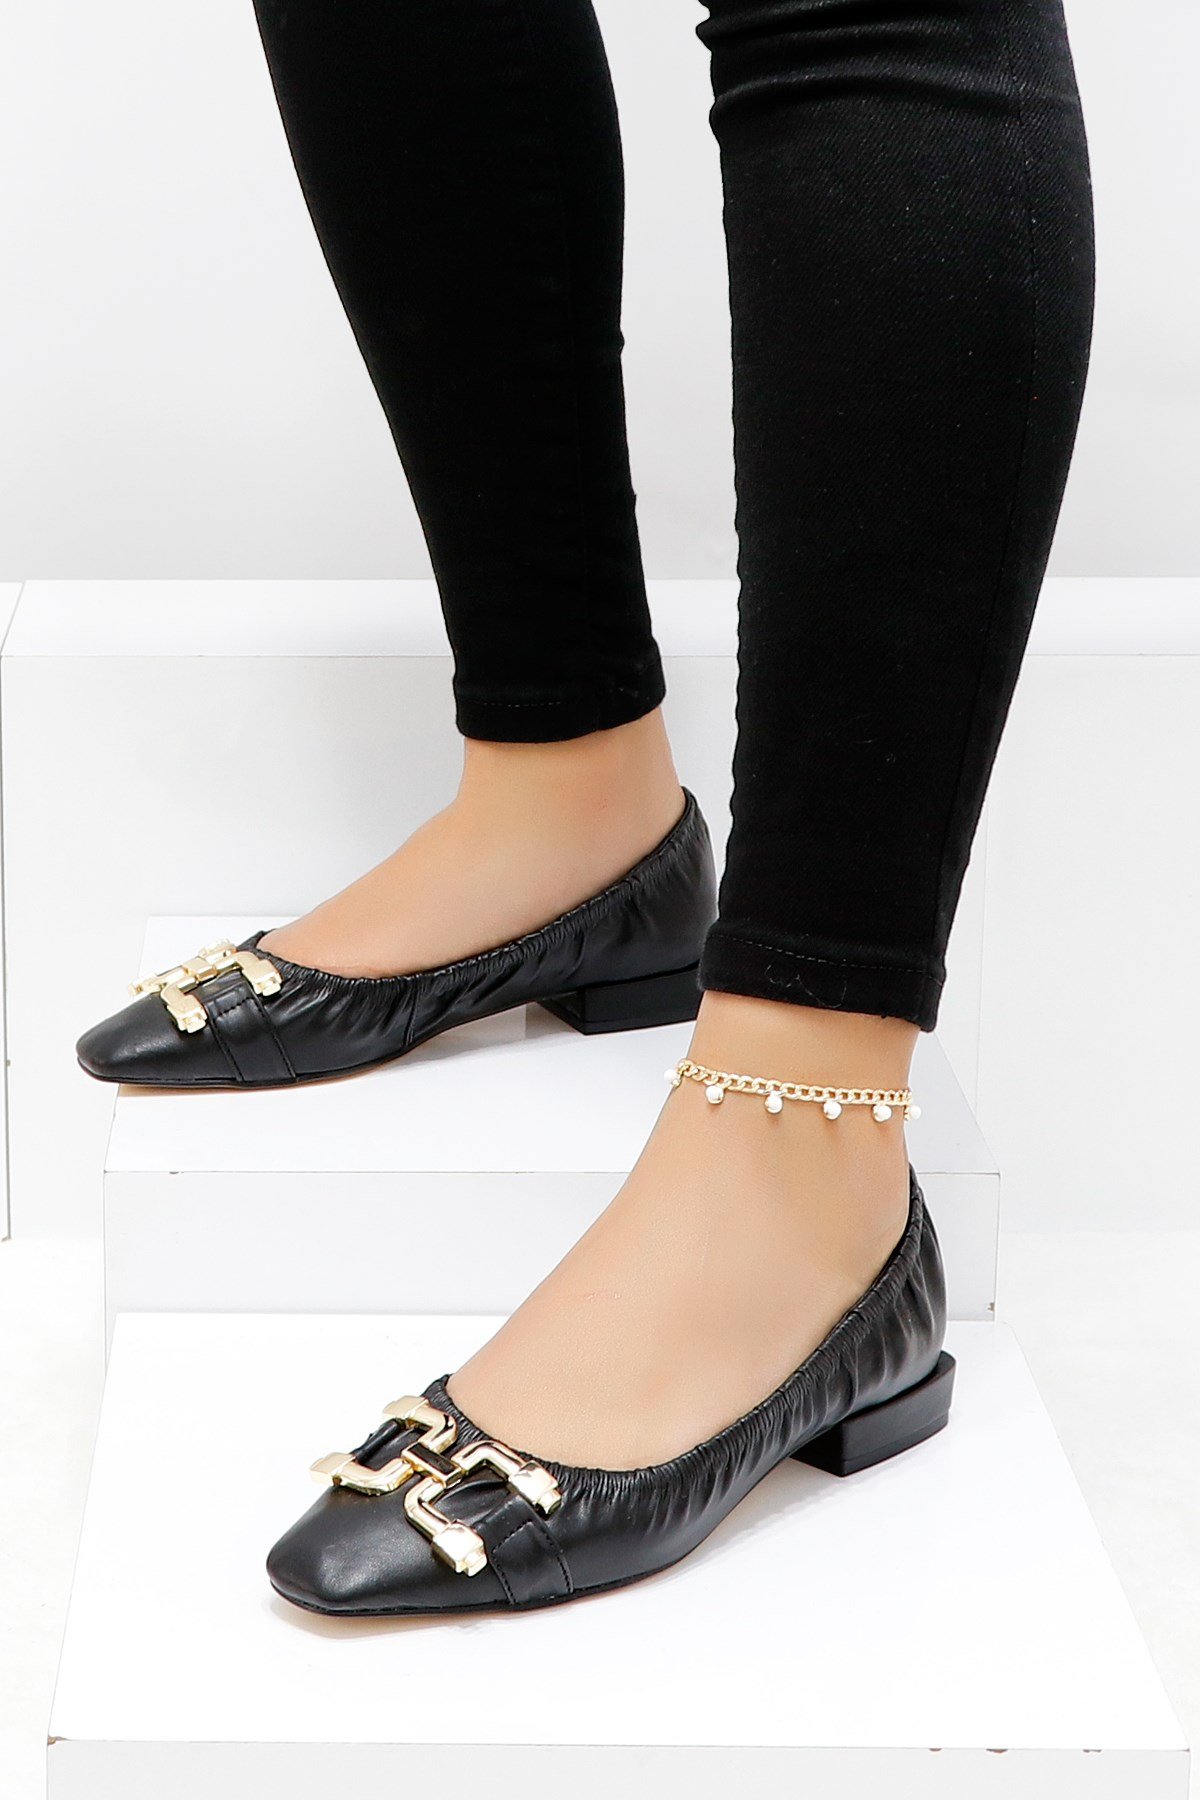 Siyah Topuklu Kadın Babet Ayakkabı Büzgülü 759 Fiyatı ve Modelleri